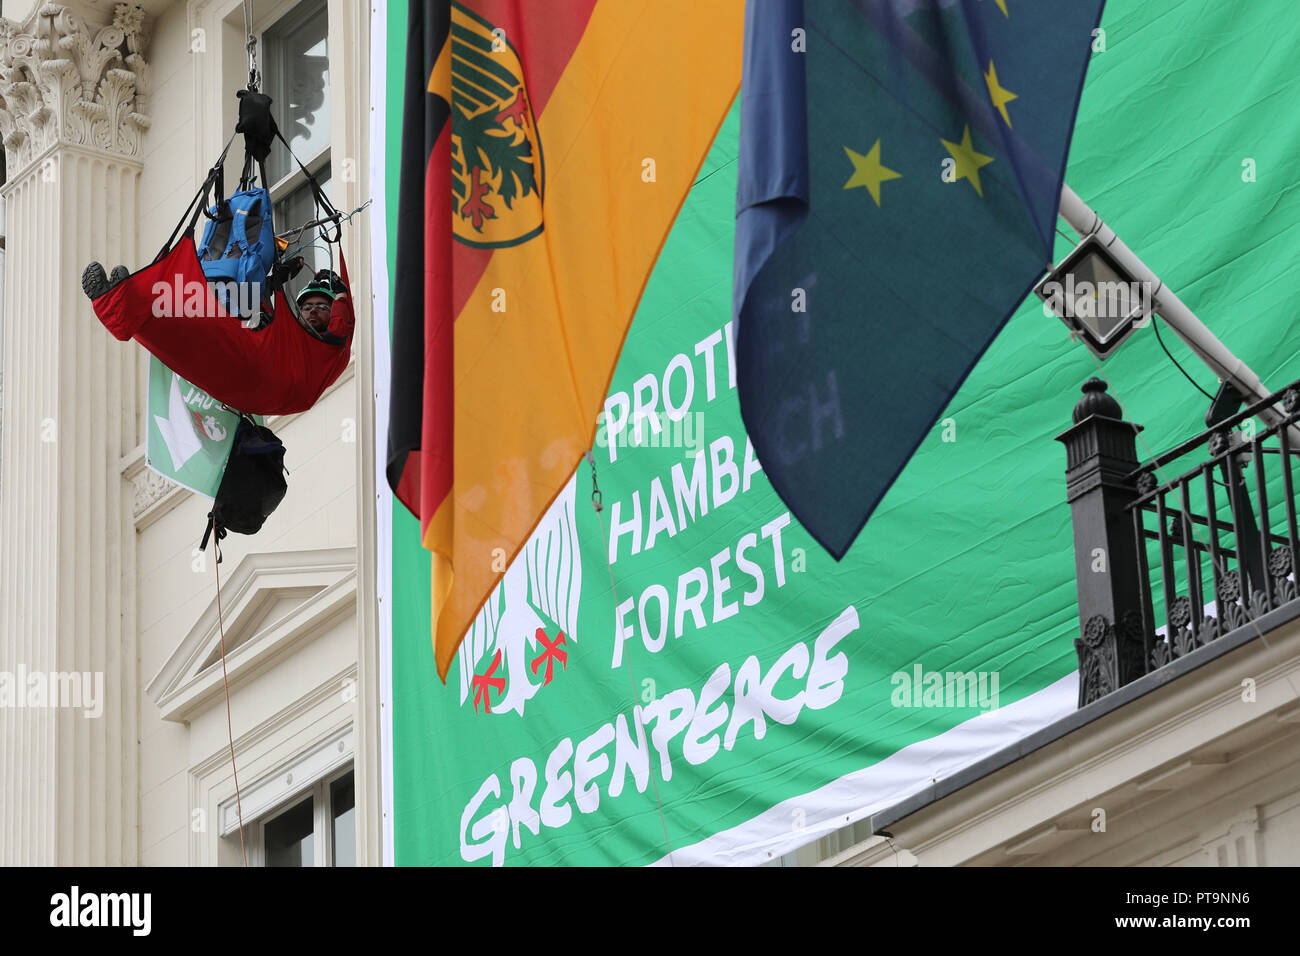 Belgrave Square, London, 8. Oktober 2018. An dem Tag, an dem UNO-Wissenschaftler ihre deutlichste Warnung noch über die Bedrohung des Klimawandels ausgegeben, fünf Greenpeace Aktivisten kletterten Gebäude der Botschaft im Herzen von Belgravia und entfaltete ein 10 x 8 Meter Banner reading "EXIT KOHLE". Die Demonstranten fordern auch Schützen" Hambach Wald", eine fortwährende Debatte über die mögliche Zerstörung der Hambacher Forst durch Tagebau Bergbau, dass die Schlagzeilen seit mehreren Wochen gemacht hat. Credit: Imageplotter Nachrichten und Sport/Alamy leben Nachrichten Stockfoto